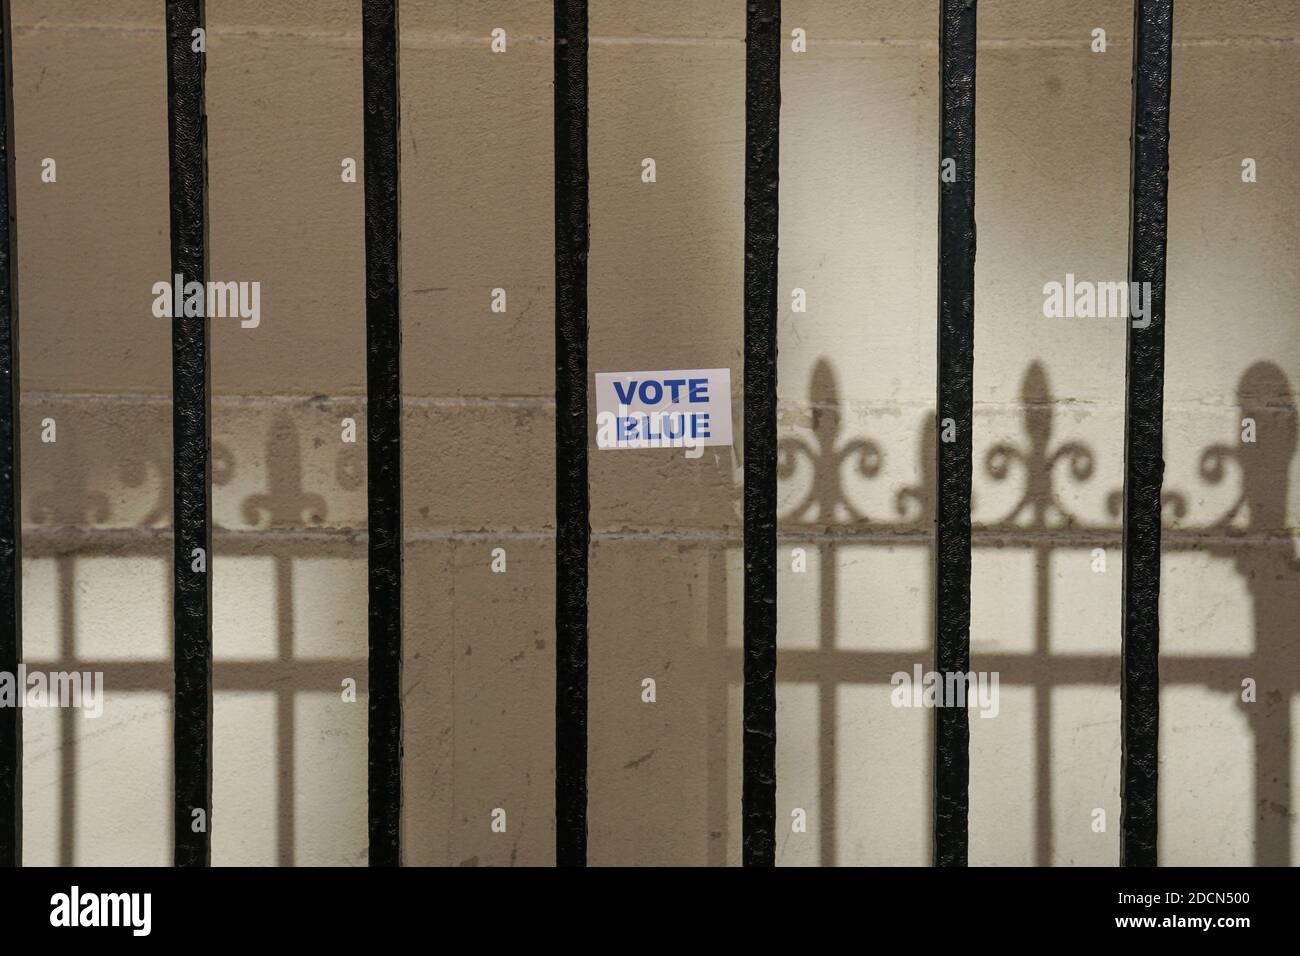 NEW YORK - 17. Oktober 2020: 'Vote Blue' Aufkleber an der Wand durch ein Tor geschossen. Stockfoto